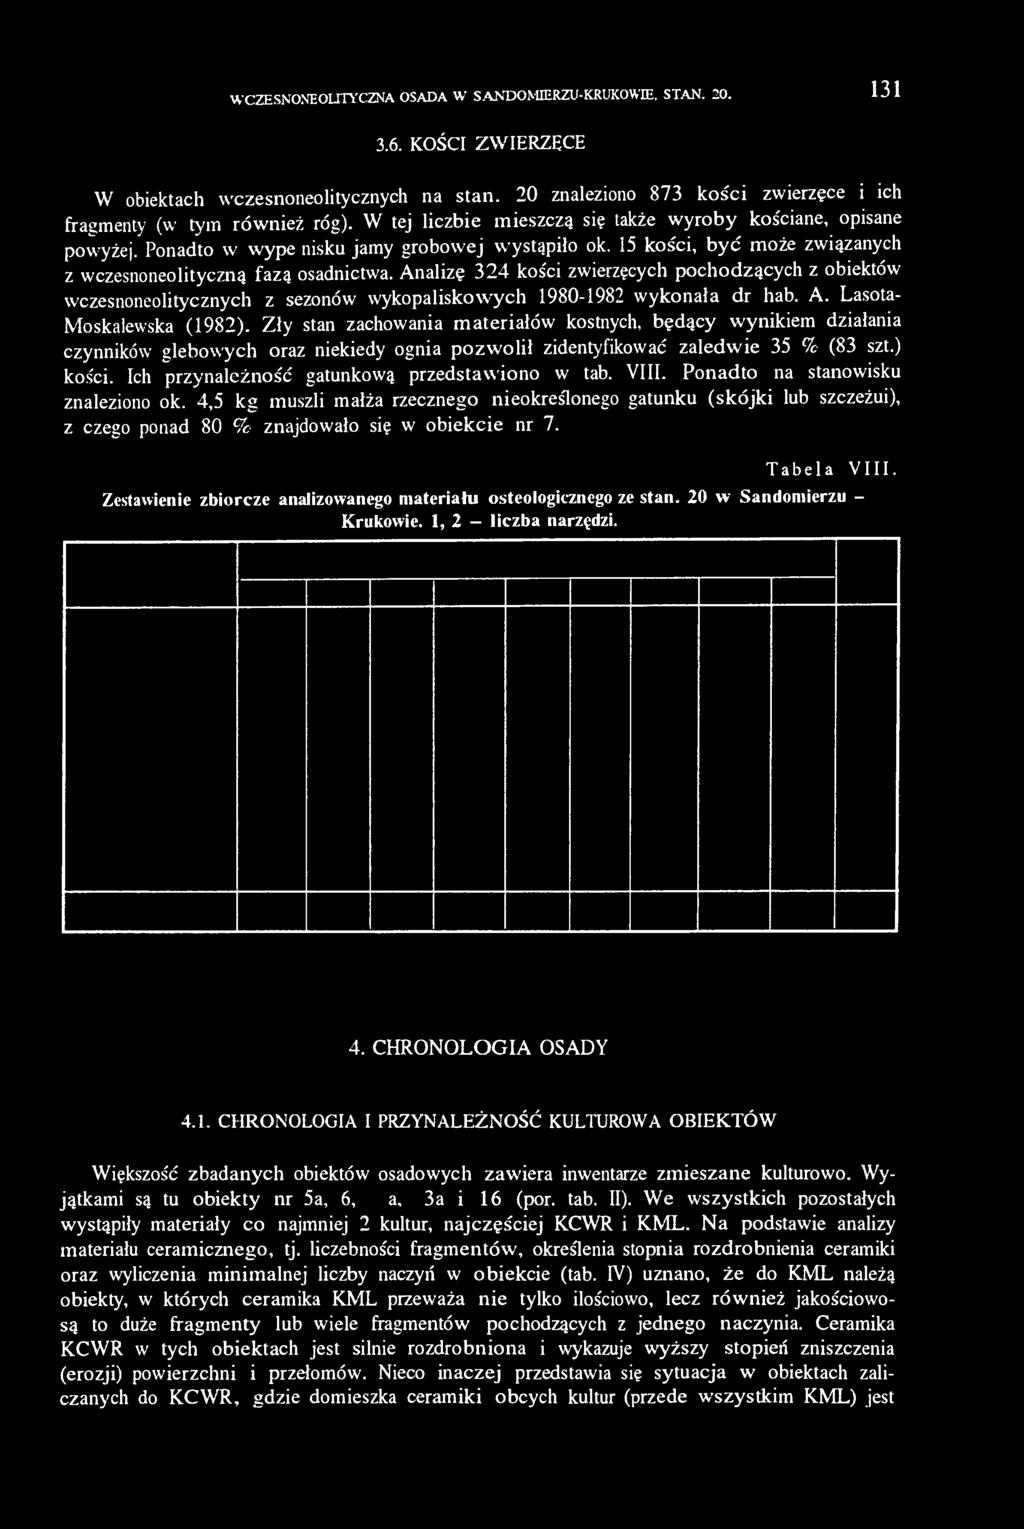 Analizę 324 kości zwierzęcych pochodzących z obiektów wczesnoneolitycznych z sezonów wykopaliskowych 1980-1982 wykonała dr hab. A. Lasota- Moskalewska (1982).